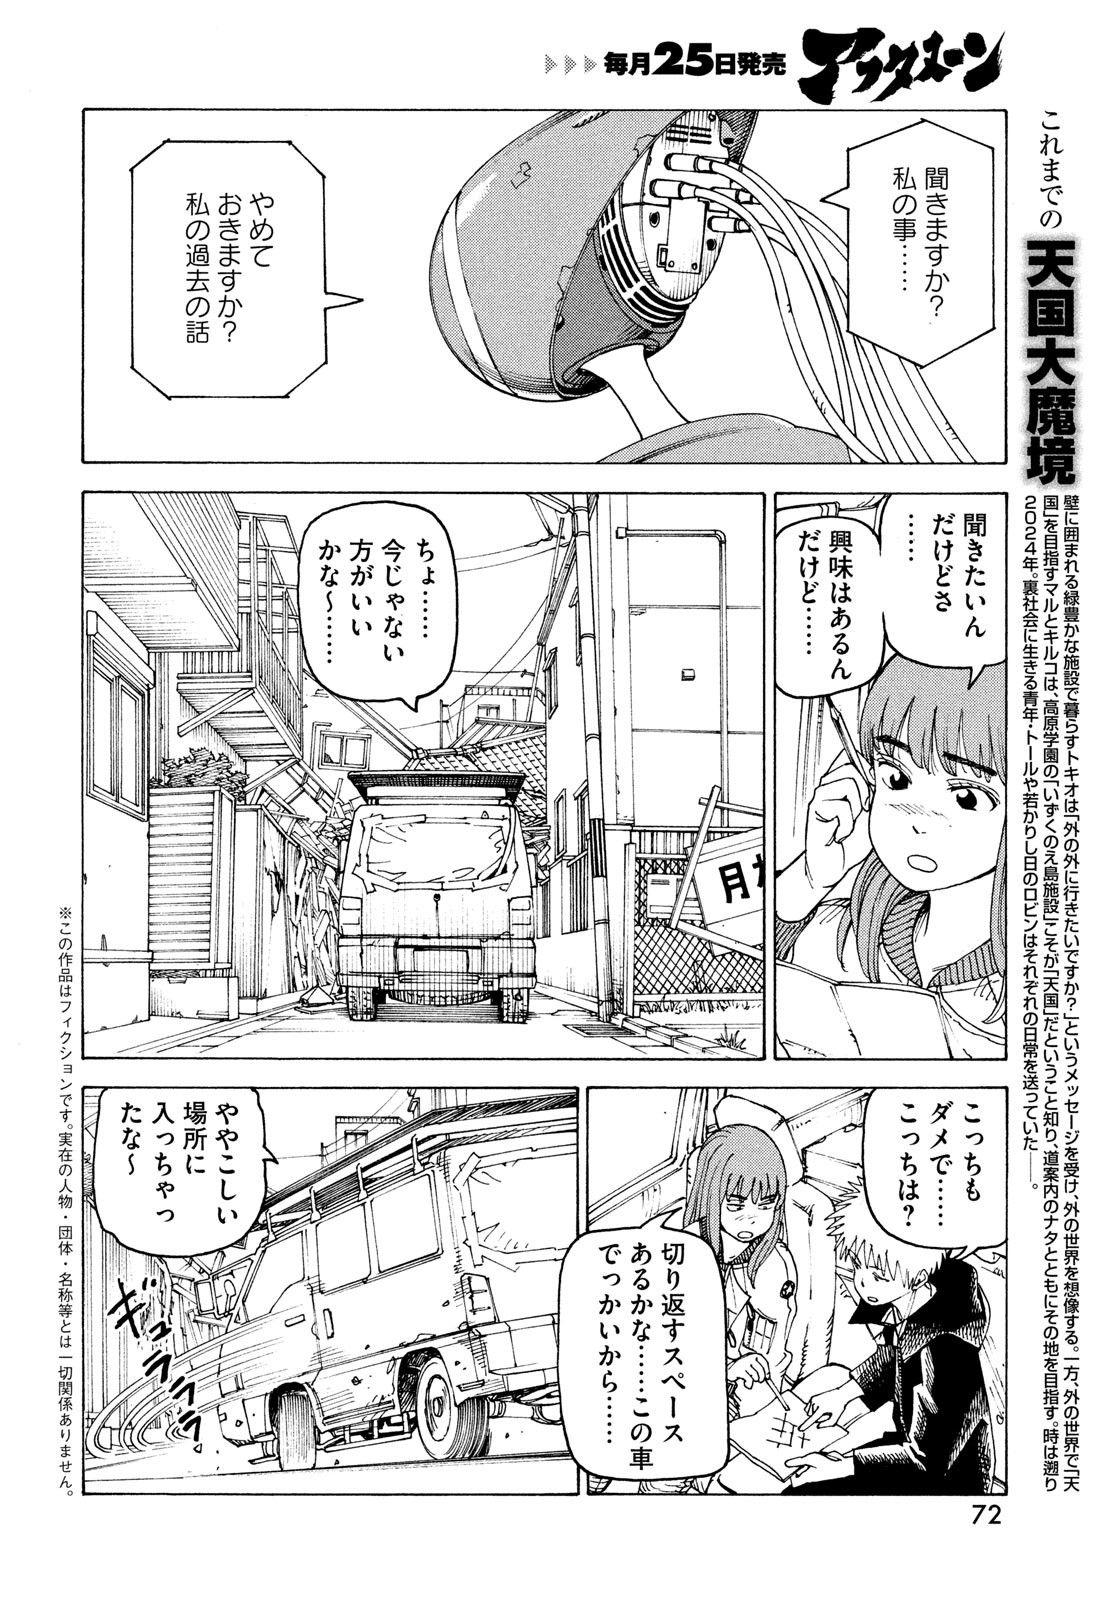 Tengoku Daimakyou - Chapter 59 - Page 2